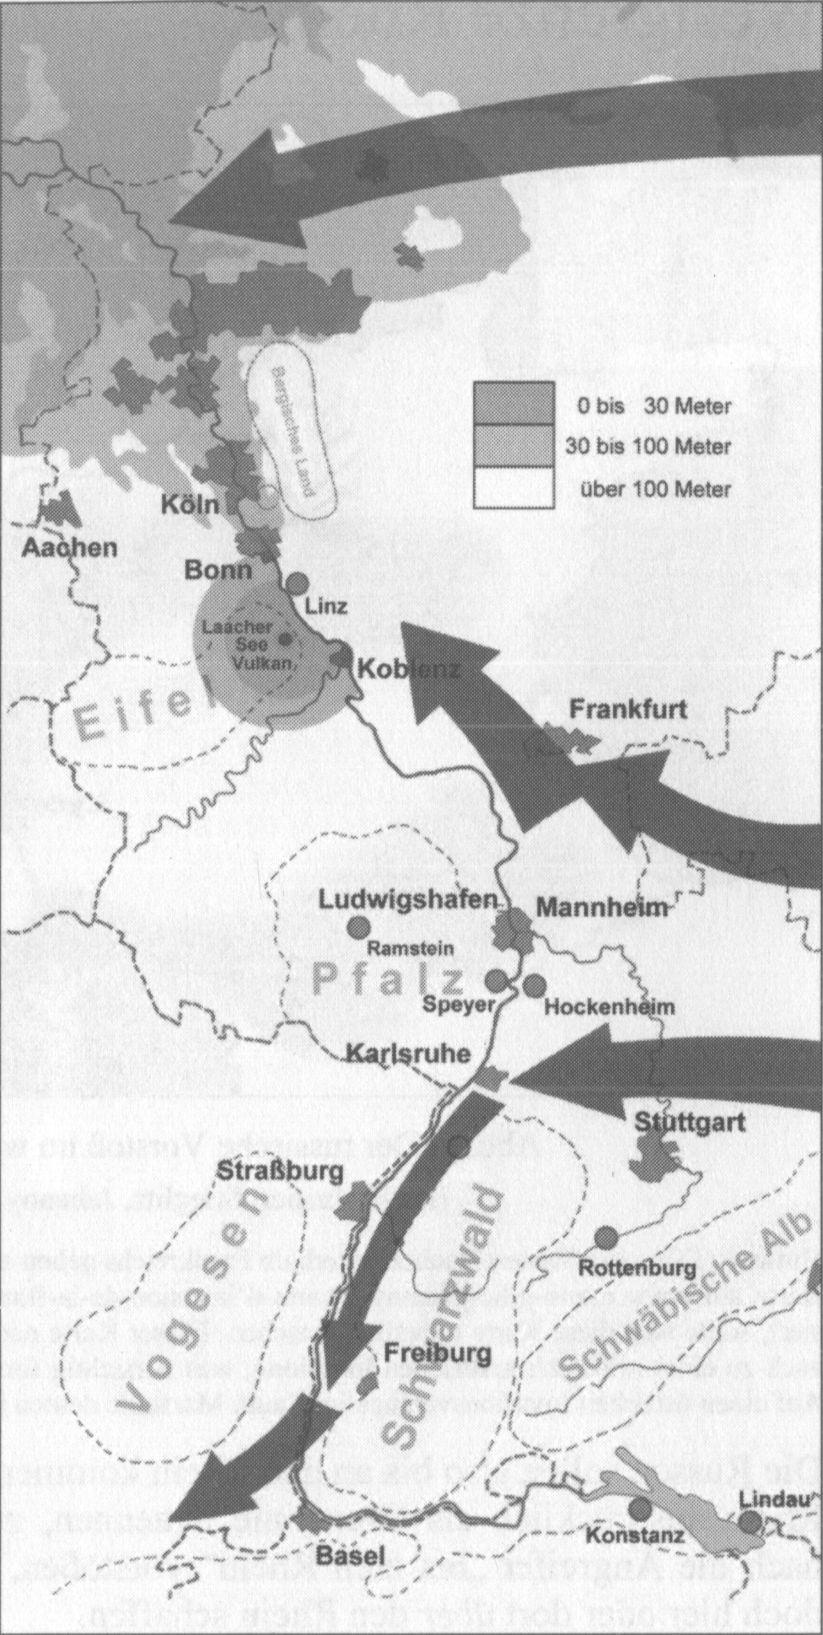 In den Quellen findet sich also eine hohe Übereinstimmung dafür, dass in Deutschland der Rhein die Grenze für den Vorstoß der Russen nach Westen bildet.